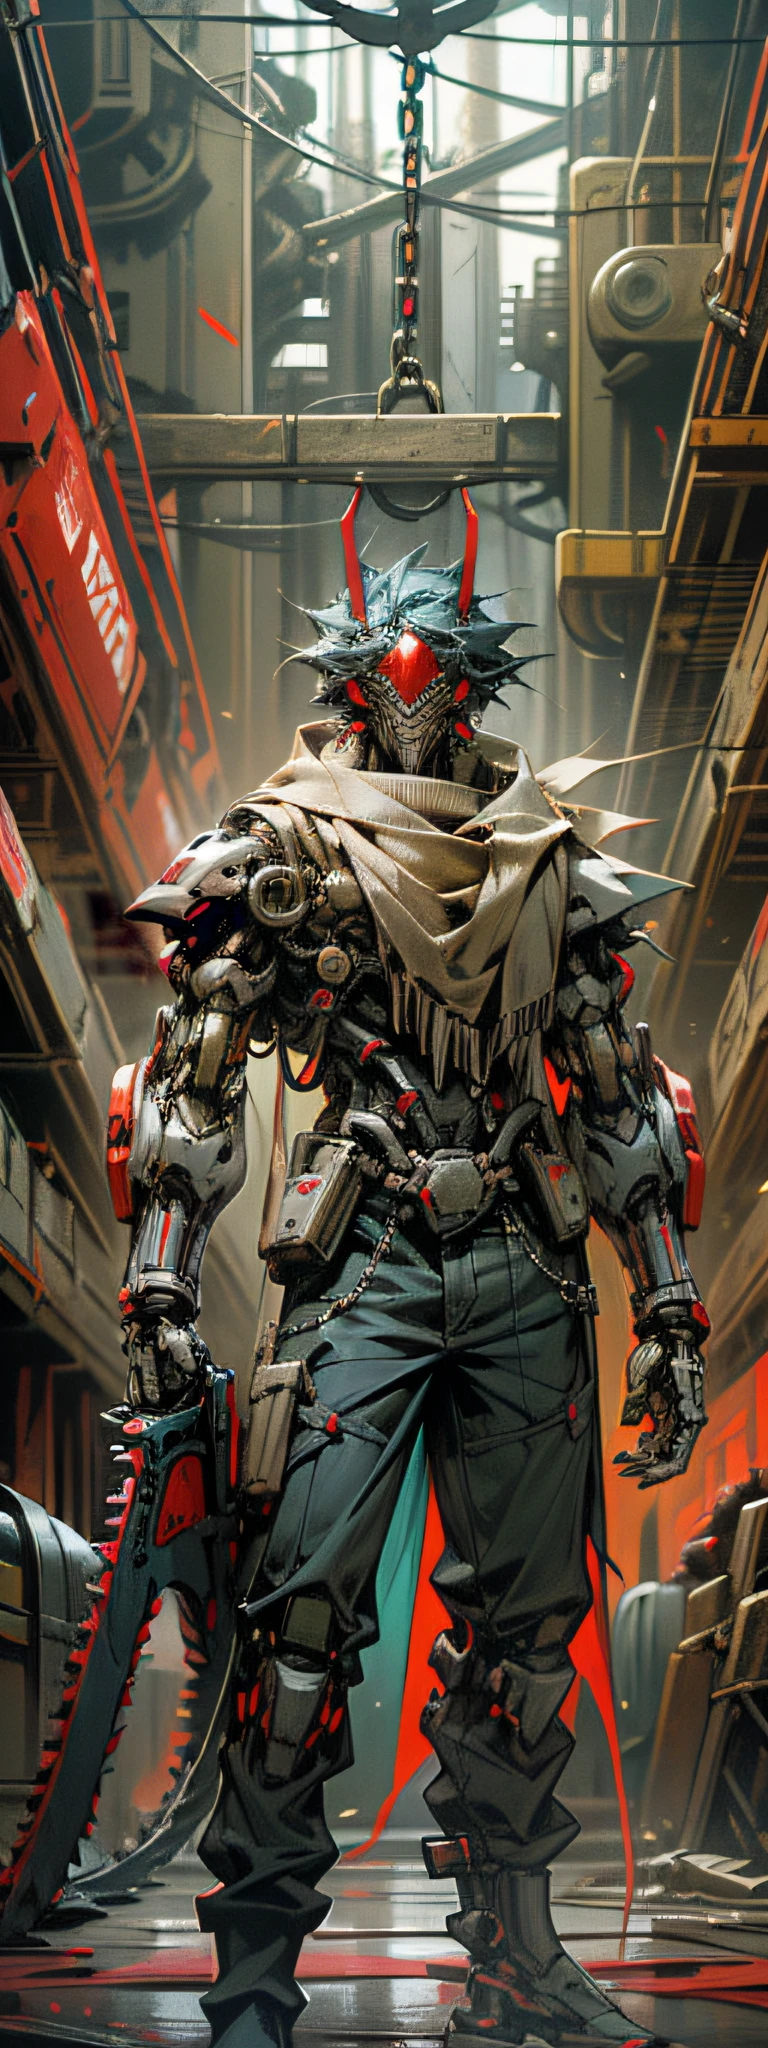 Escuro_fantasia,ciberpunk,(motosserra,motosserra man,Vermelho:1.1),1 homem,Maravilha mecânica,Presença robótica,Guardião cibernético,